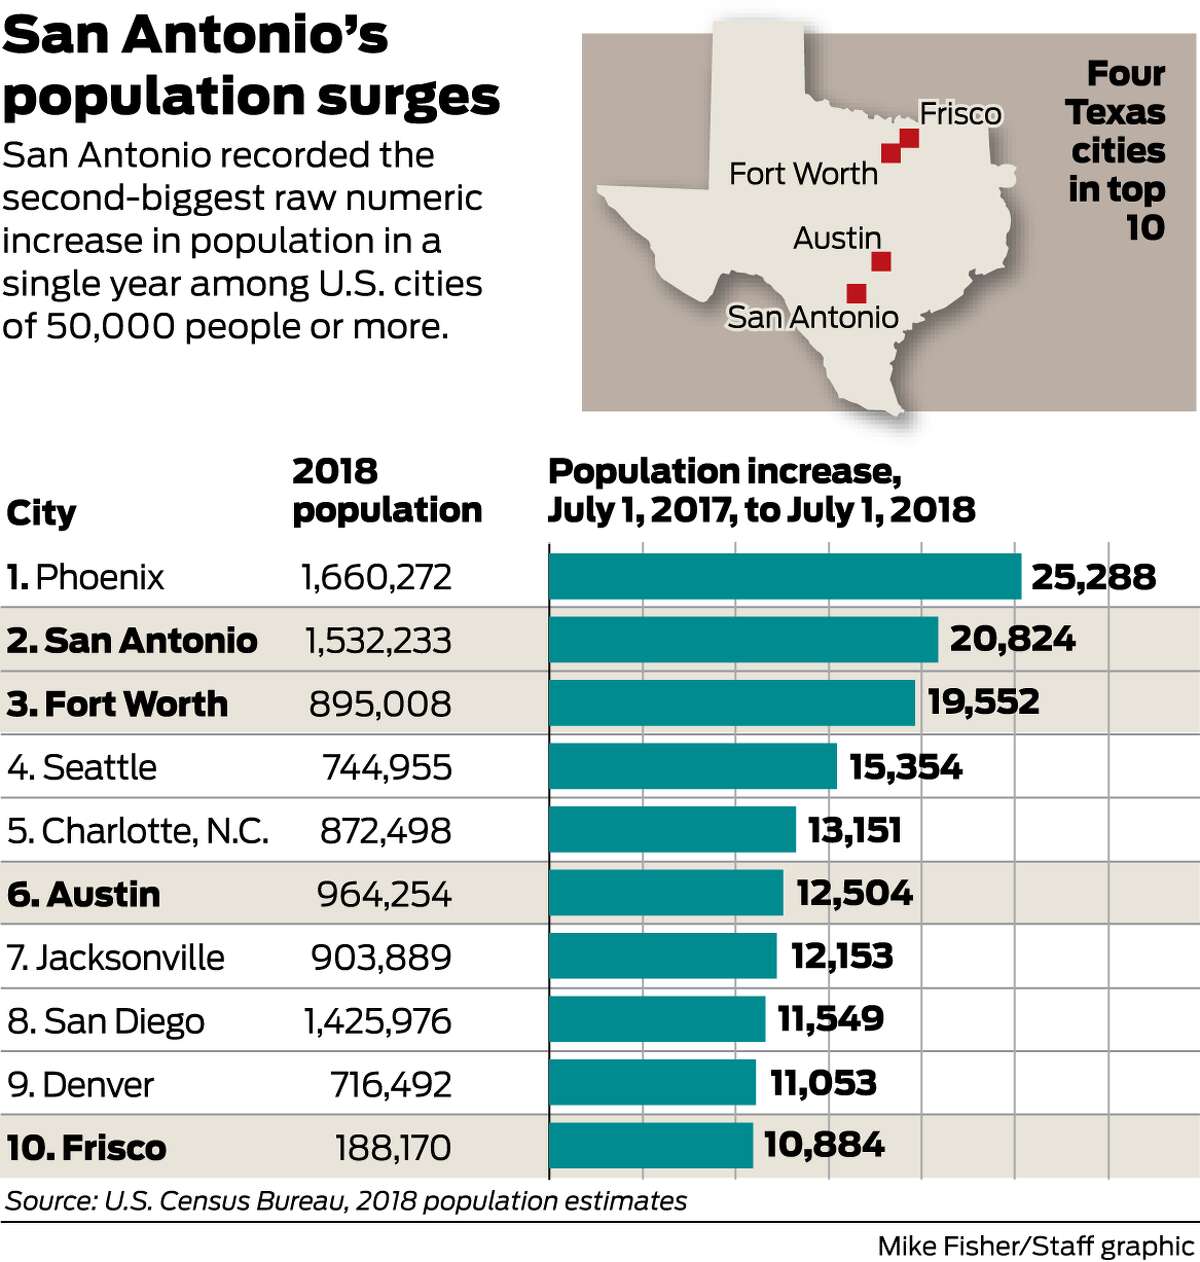 New Braunfels, San Antonio sustain their population surges